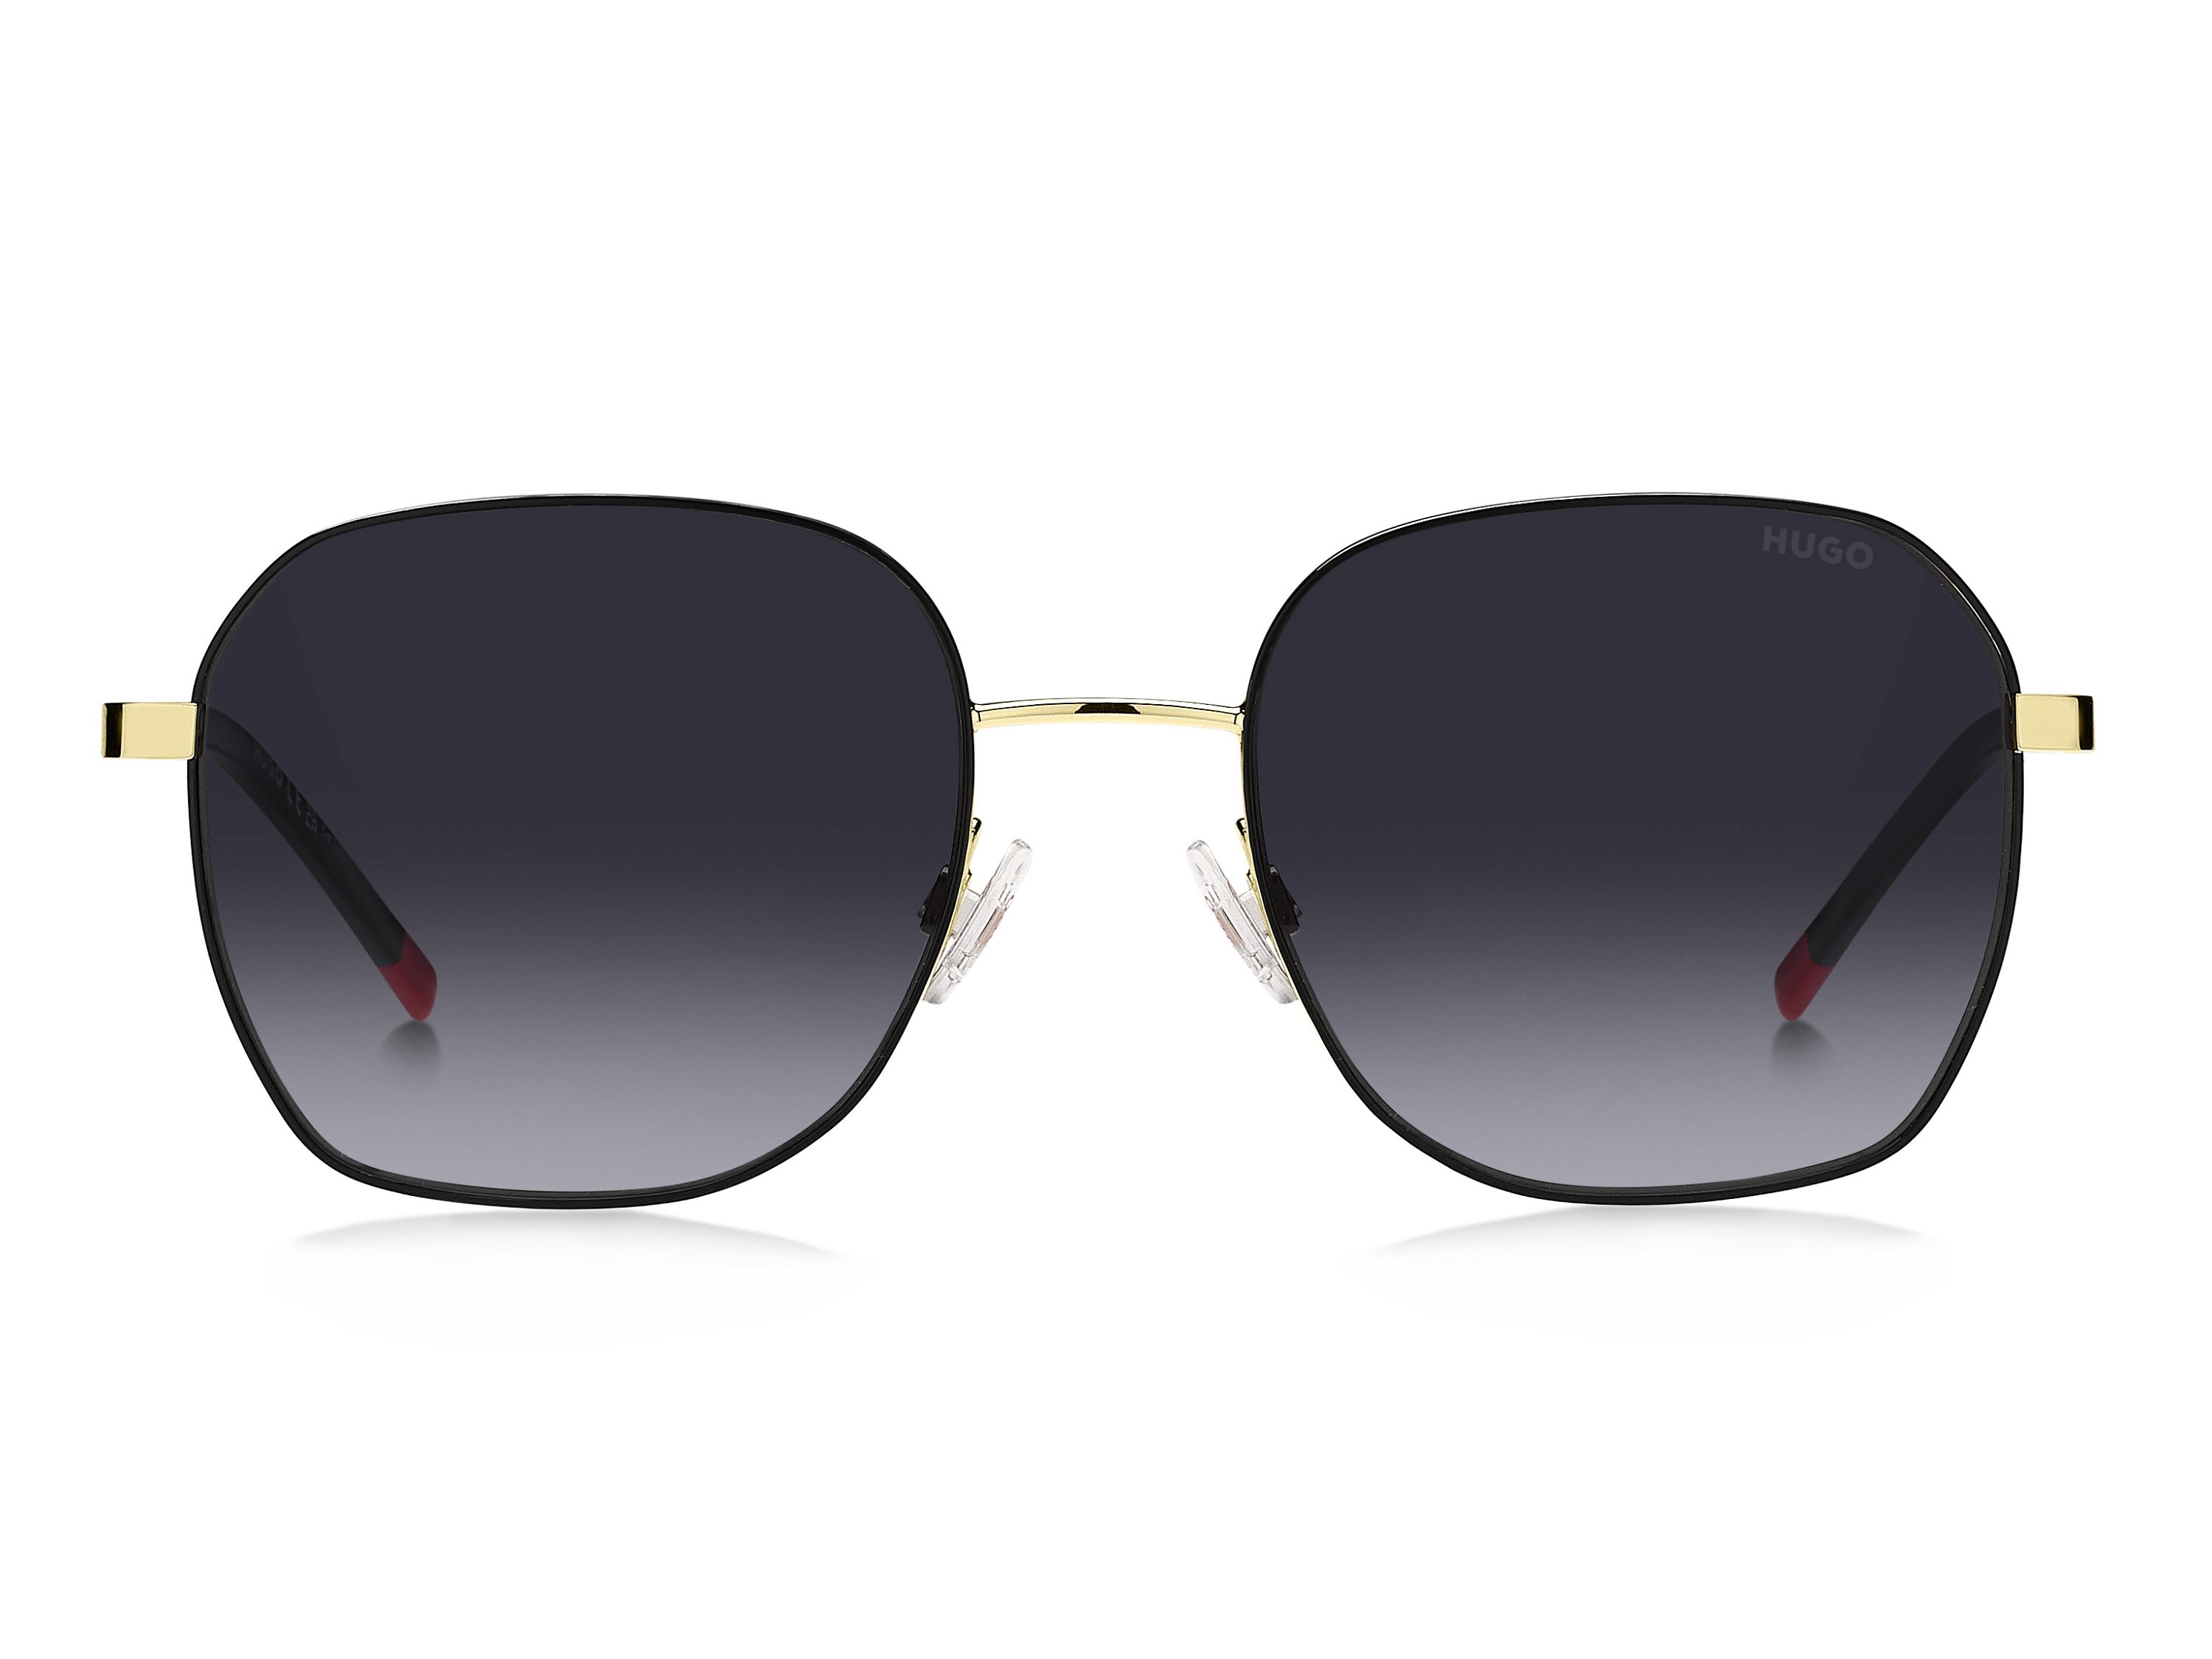 Das Bild zeigt die Sonnenbrille HG1267/S RHL von der Marke Hugo in gold/schwarz.